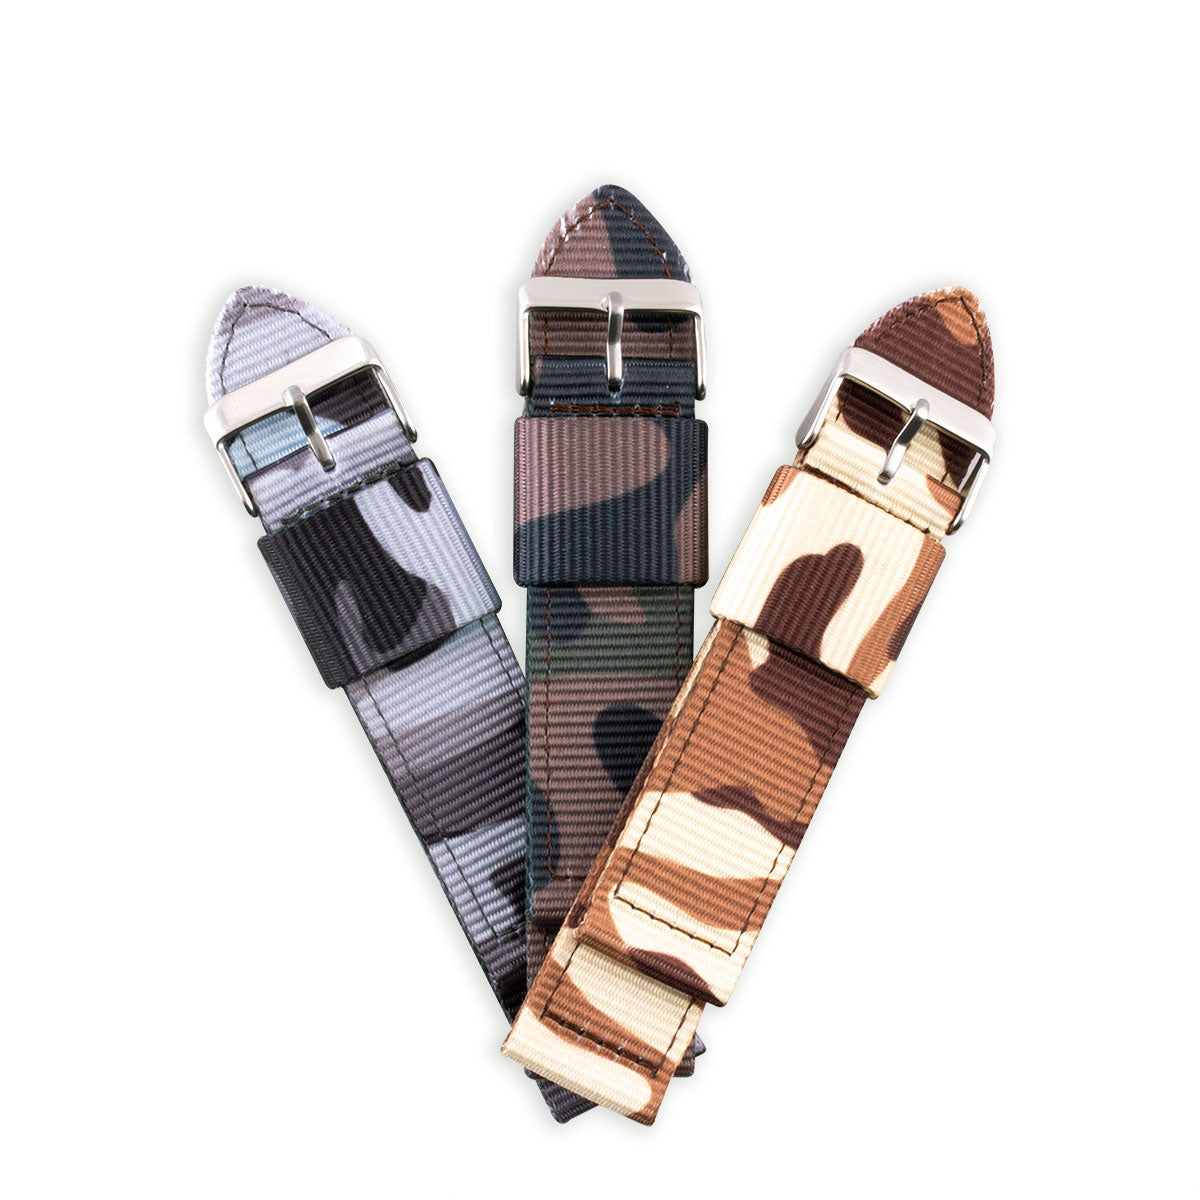 Bracelet de montre 2 brins - Nylon / tissu Camo (marron, marron/vert, gris) - watch band leather strap - ABP Concept -